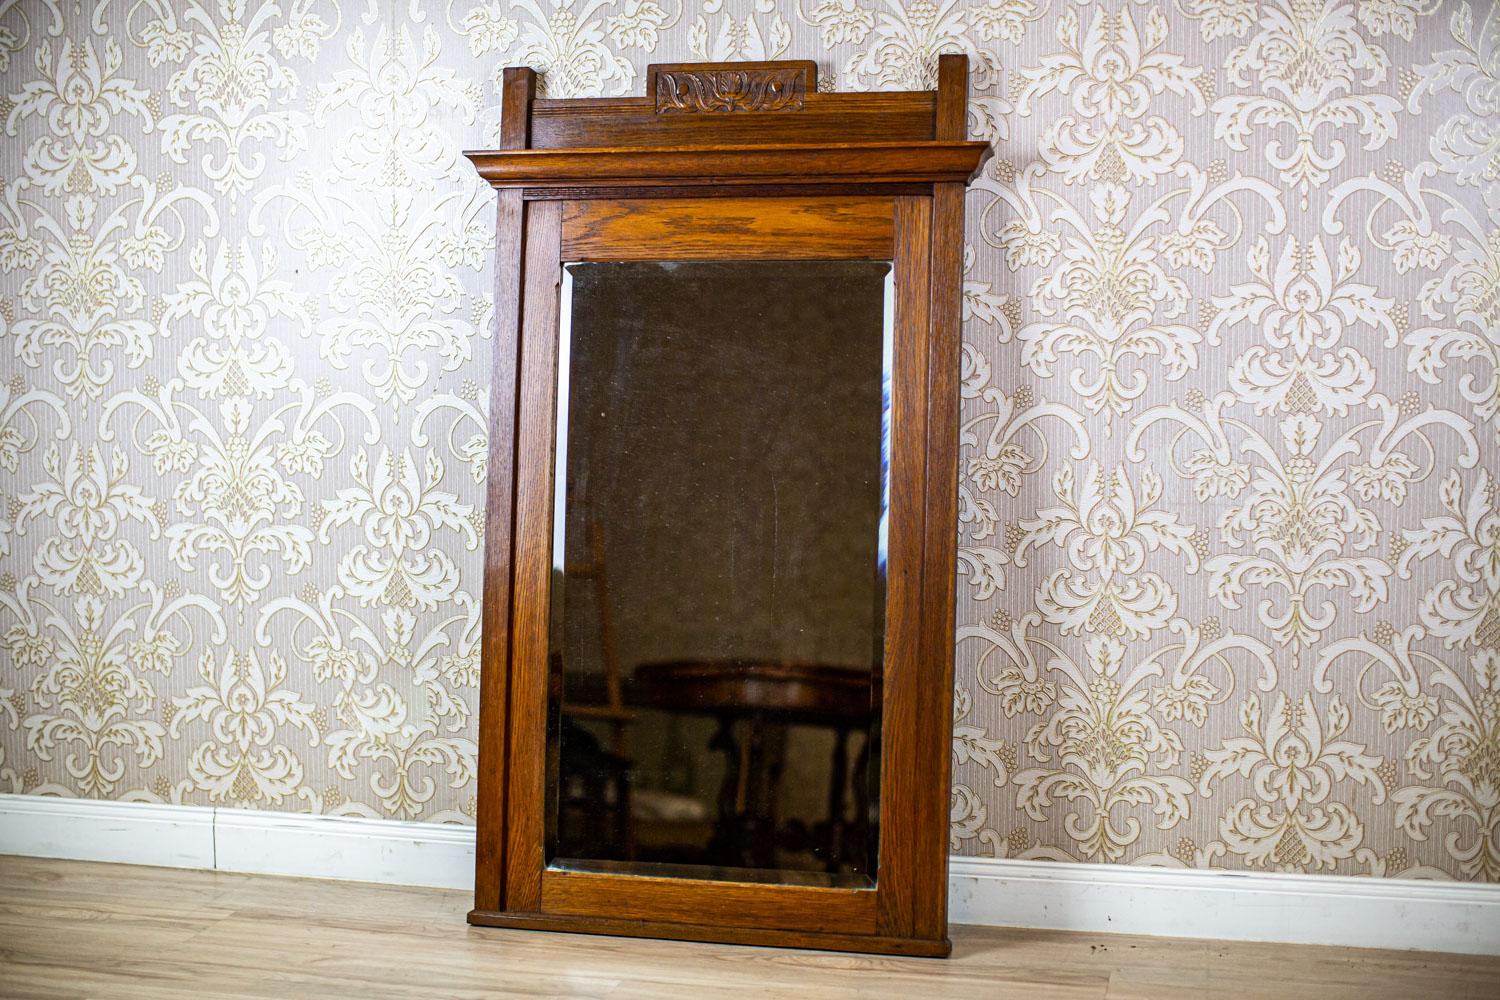 Fußbodenspiegel des frühen 20. Jahrhunderts mit hellbraunem Eichenholzrahmen

Wir präsentieren Ihnen diesen geschmackvoll dekorierten und in seiner Form schlichten Spiegel in einem Eichenrahmen.
Sie stammt aus dem frühen 20. Jahrhundert.
Das Holz